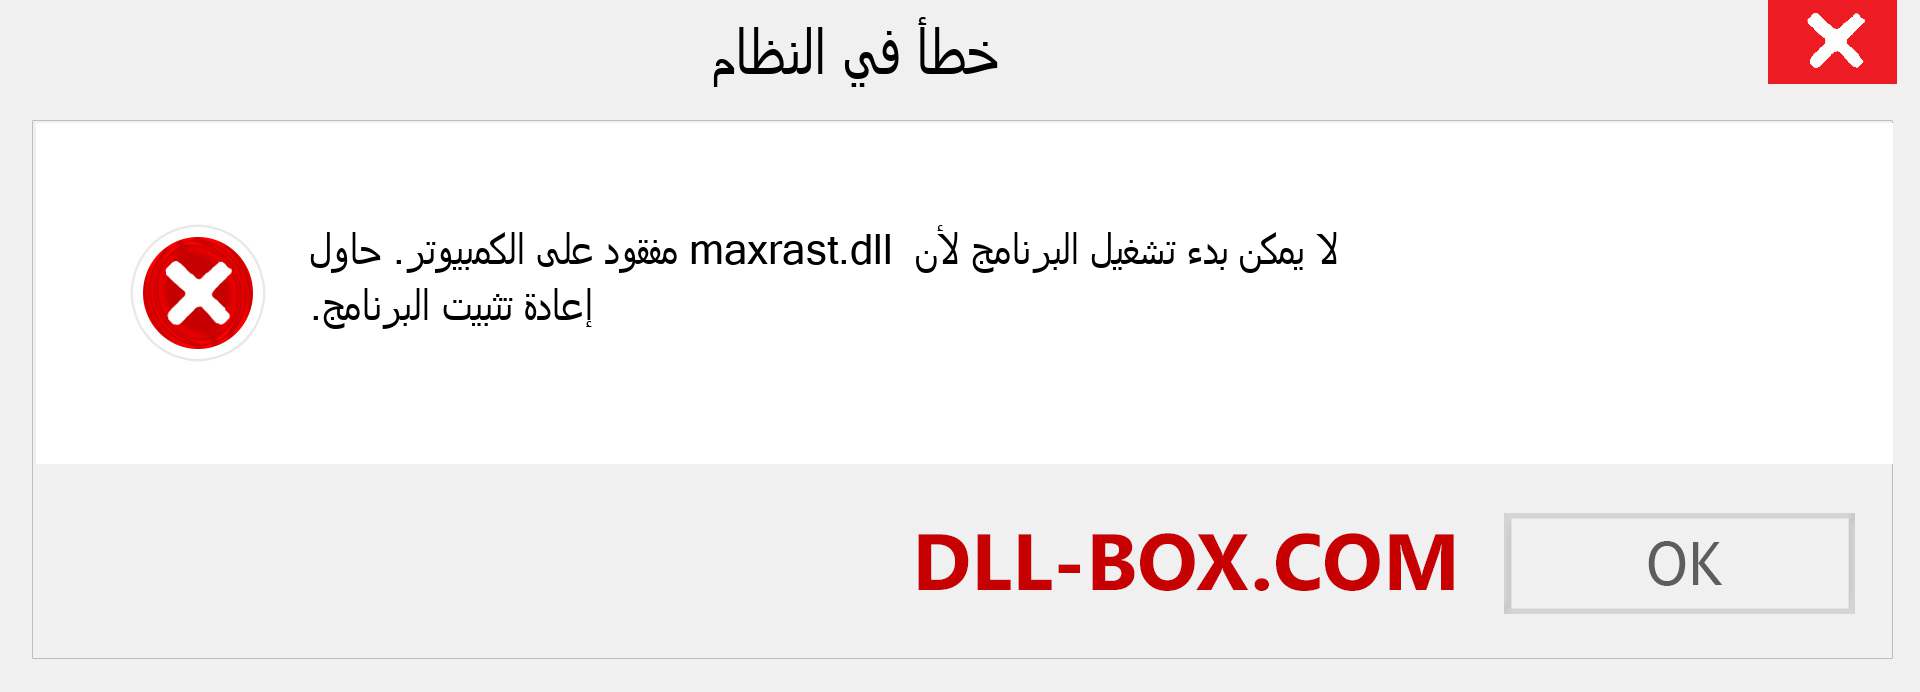 ملف maxrast.dll مفقود ؟. التنزيل لنظام التشغيل Windows 7 و 8 و 10 - إصلاح خطأ maxrast dll المفقود على Windows والصور والصور